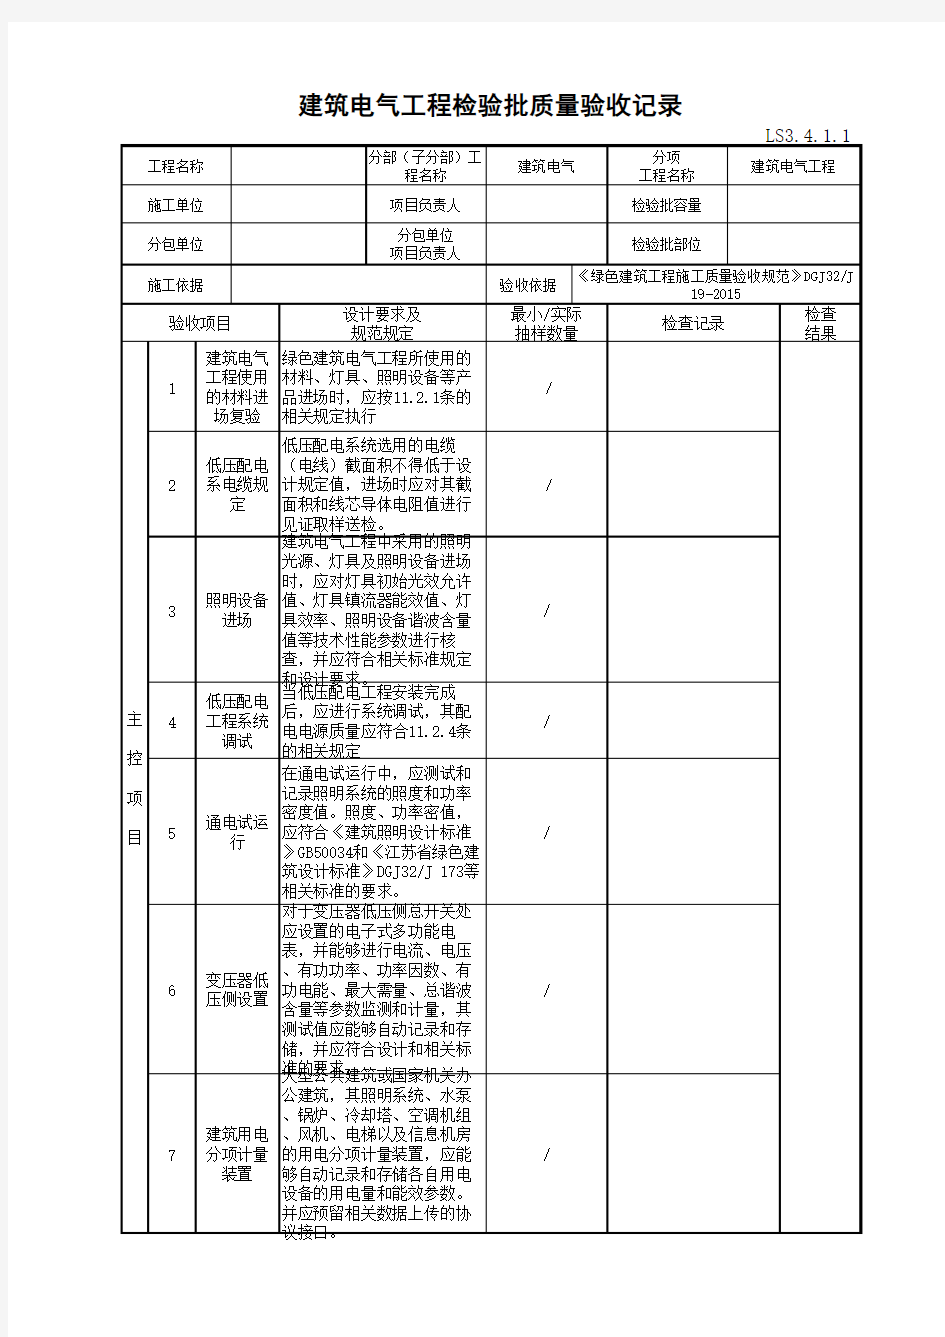 江苏省建设工程质监0190910六版表格文件LS3.4.1.1